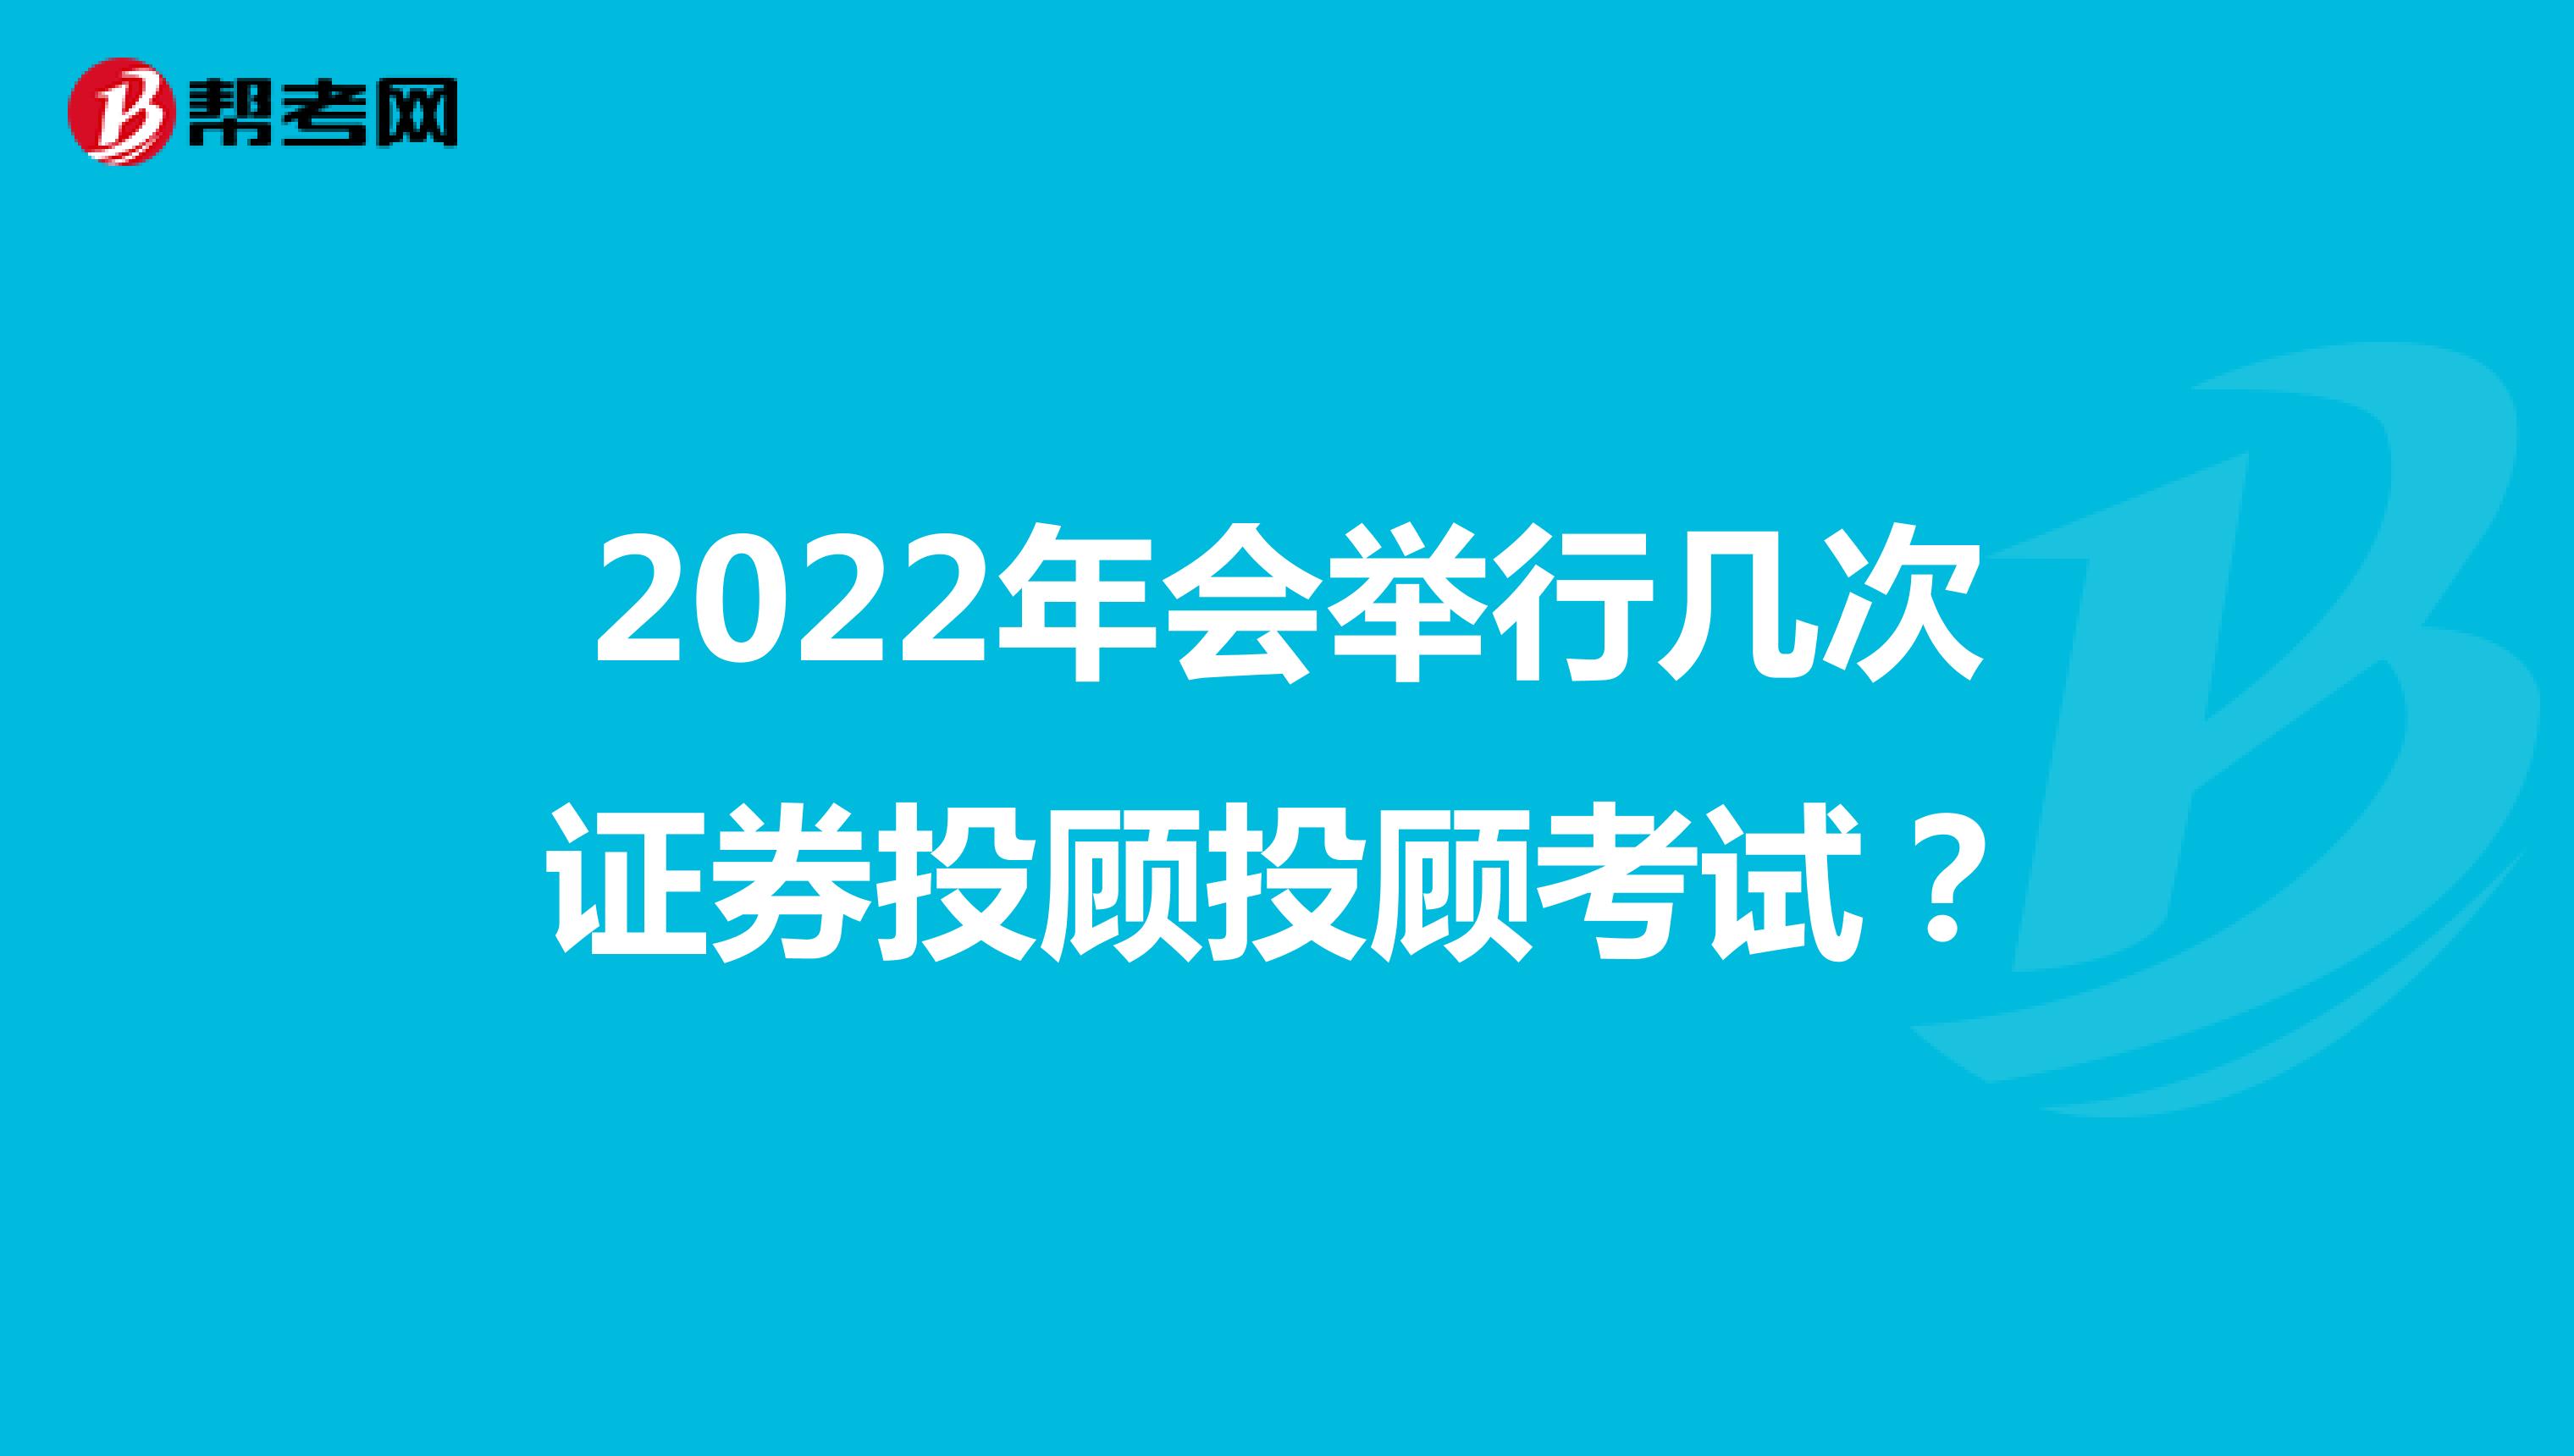 2022年会举行几次证券投顾投顾考试？